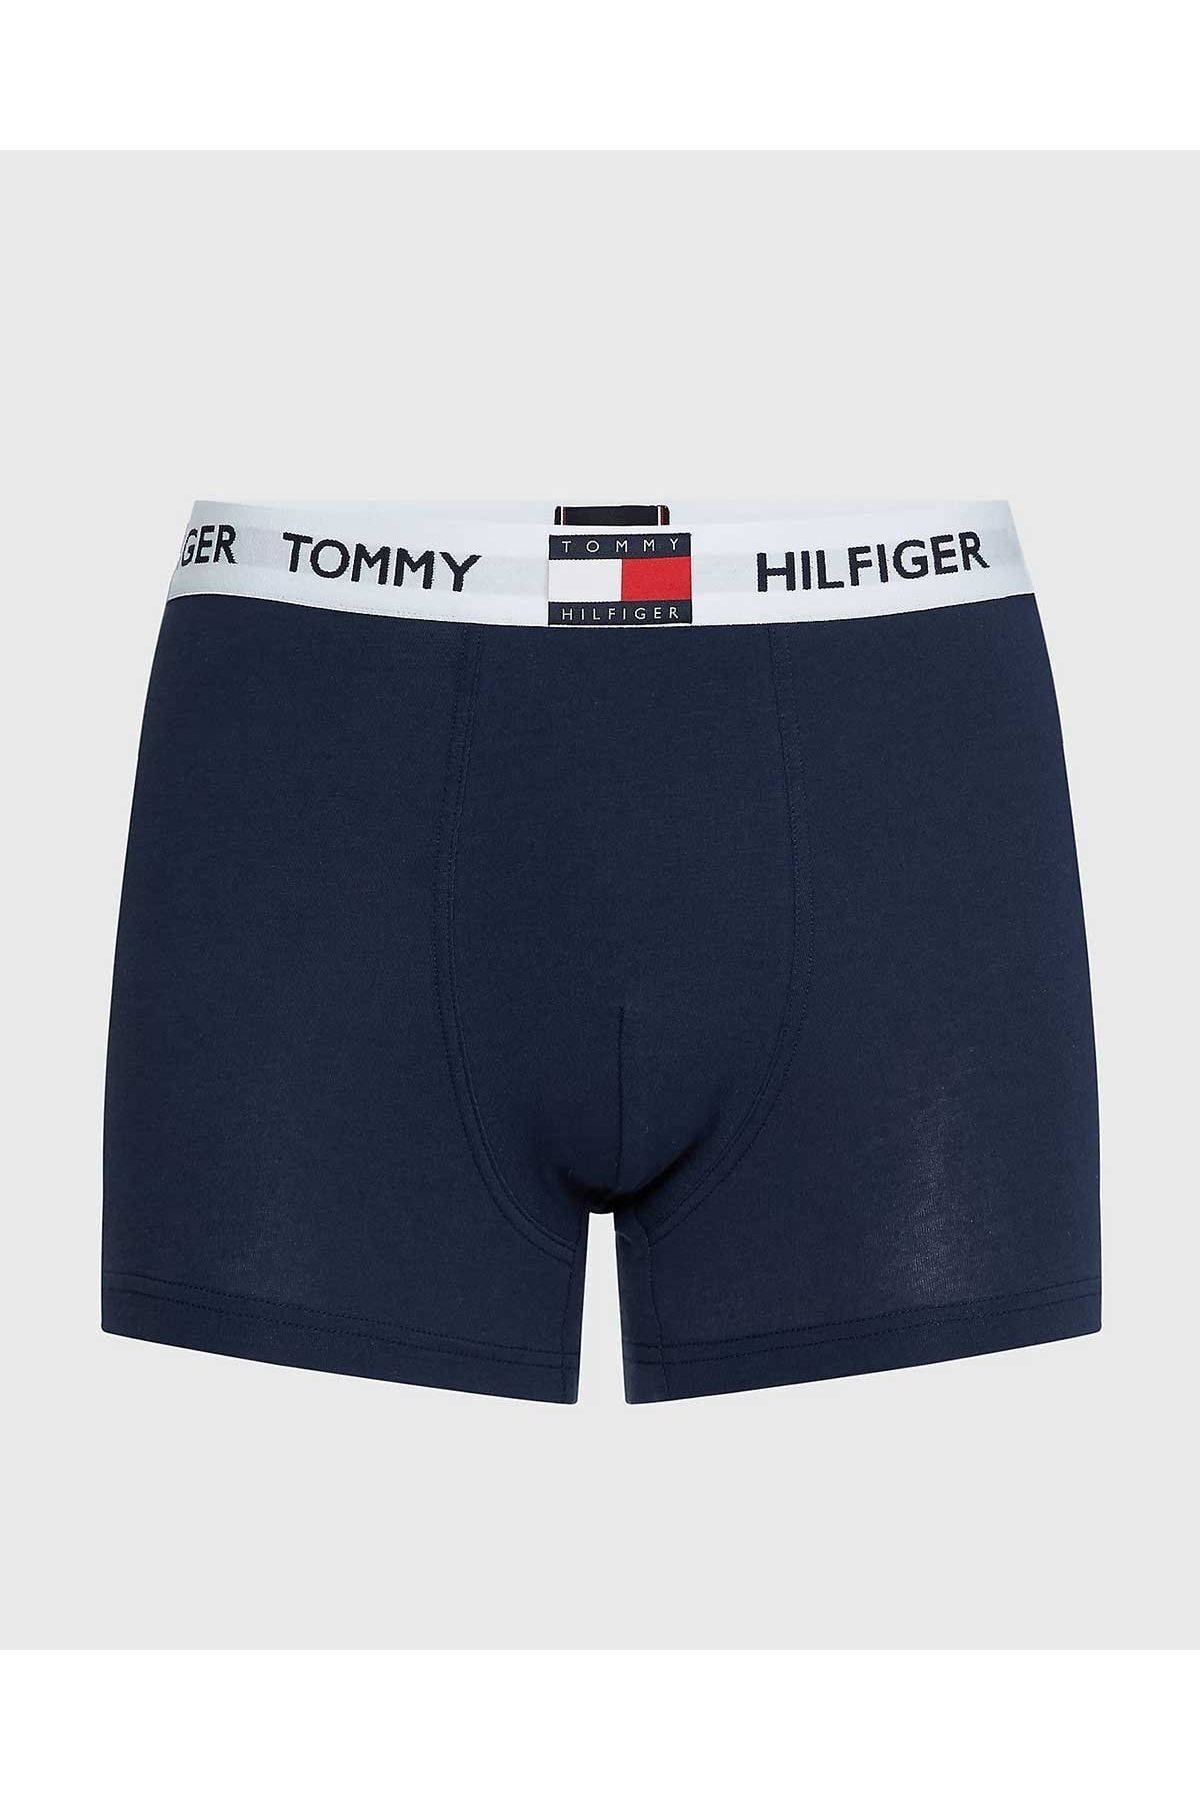 Tommy Hilfiger Erkek Underwear Bottoms Erkek Boxer Um0um01810